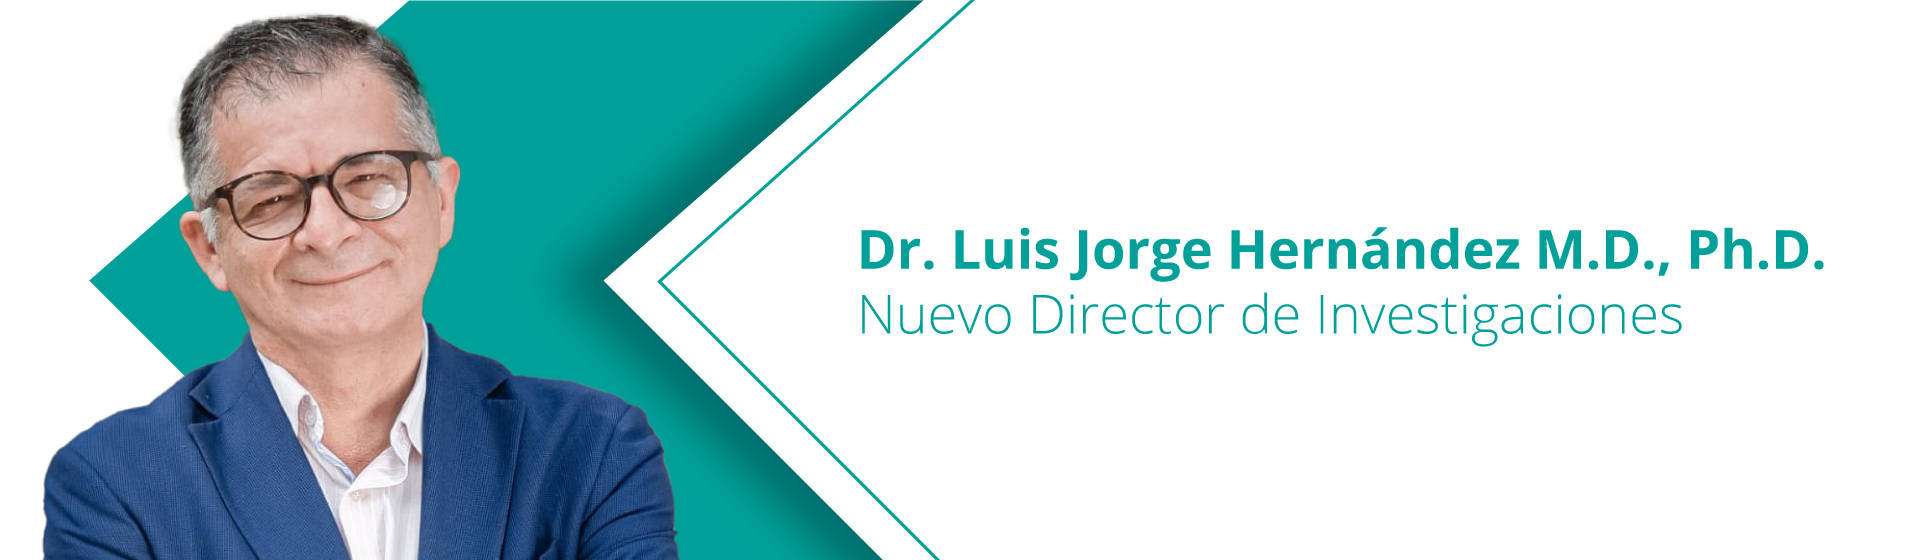 Dr. Luis Jorge Hernández M.D., Ph.D. - Nuevo Director de Investigaciones 